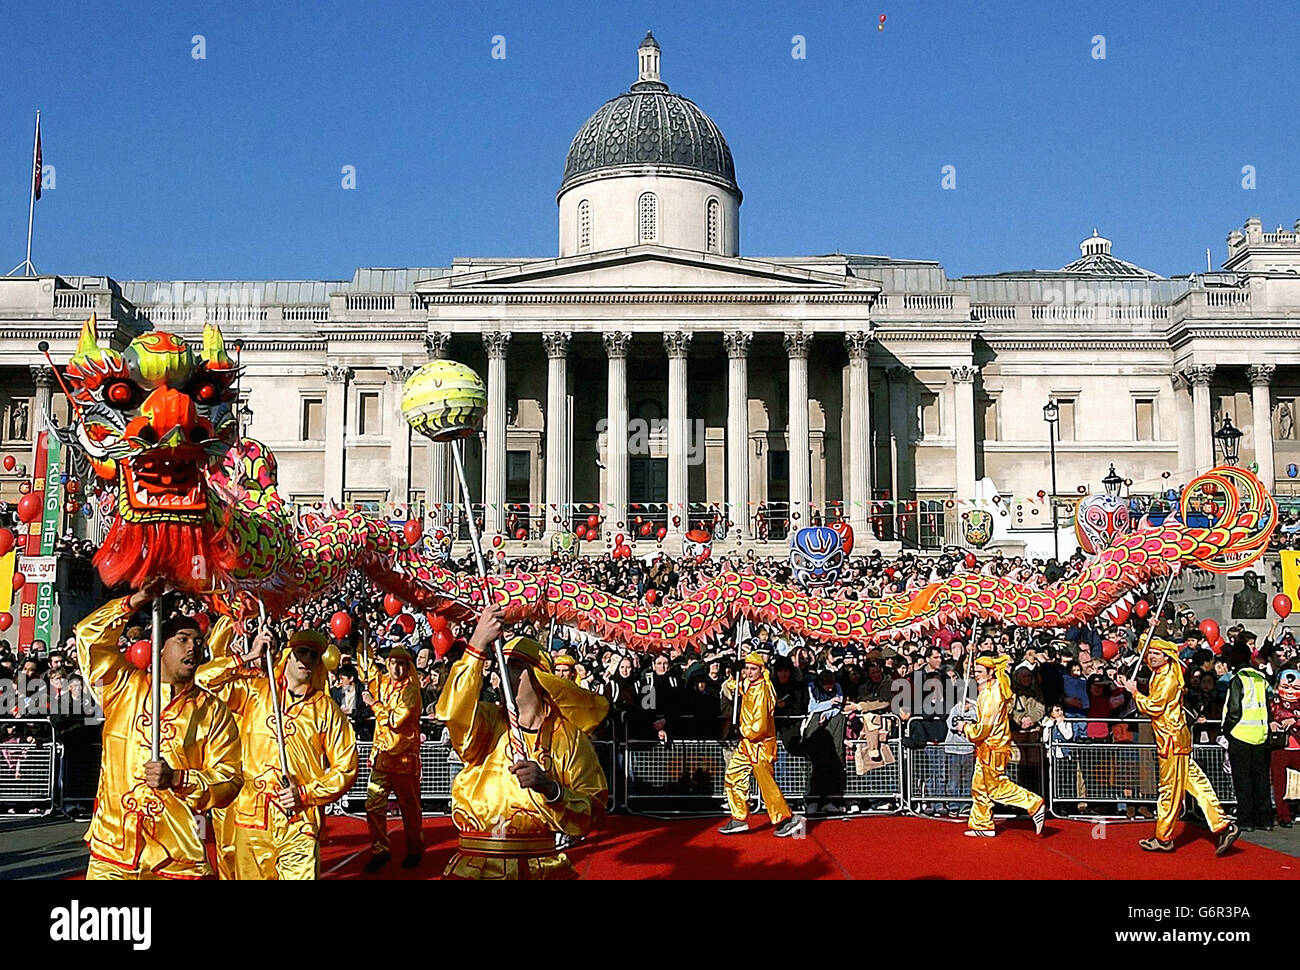 Un dragón es desfilado a través de Trafalger Square. Un dragón es desfilado durante las celebraciones del Año Nuevo Chino en la plaza Trafalgar de Londres. Foto de stock